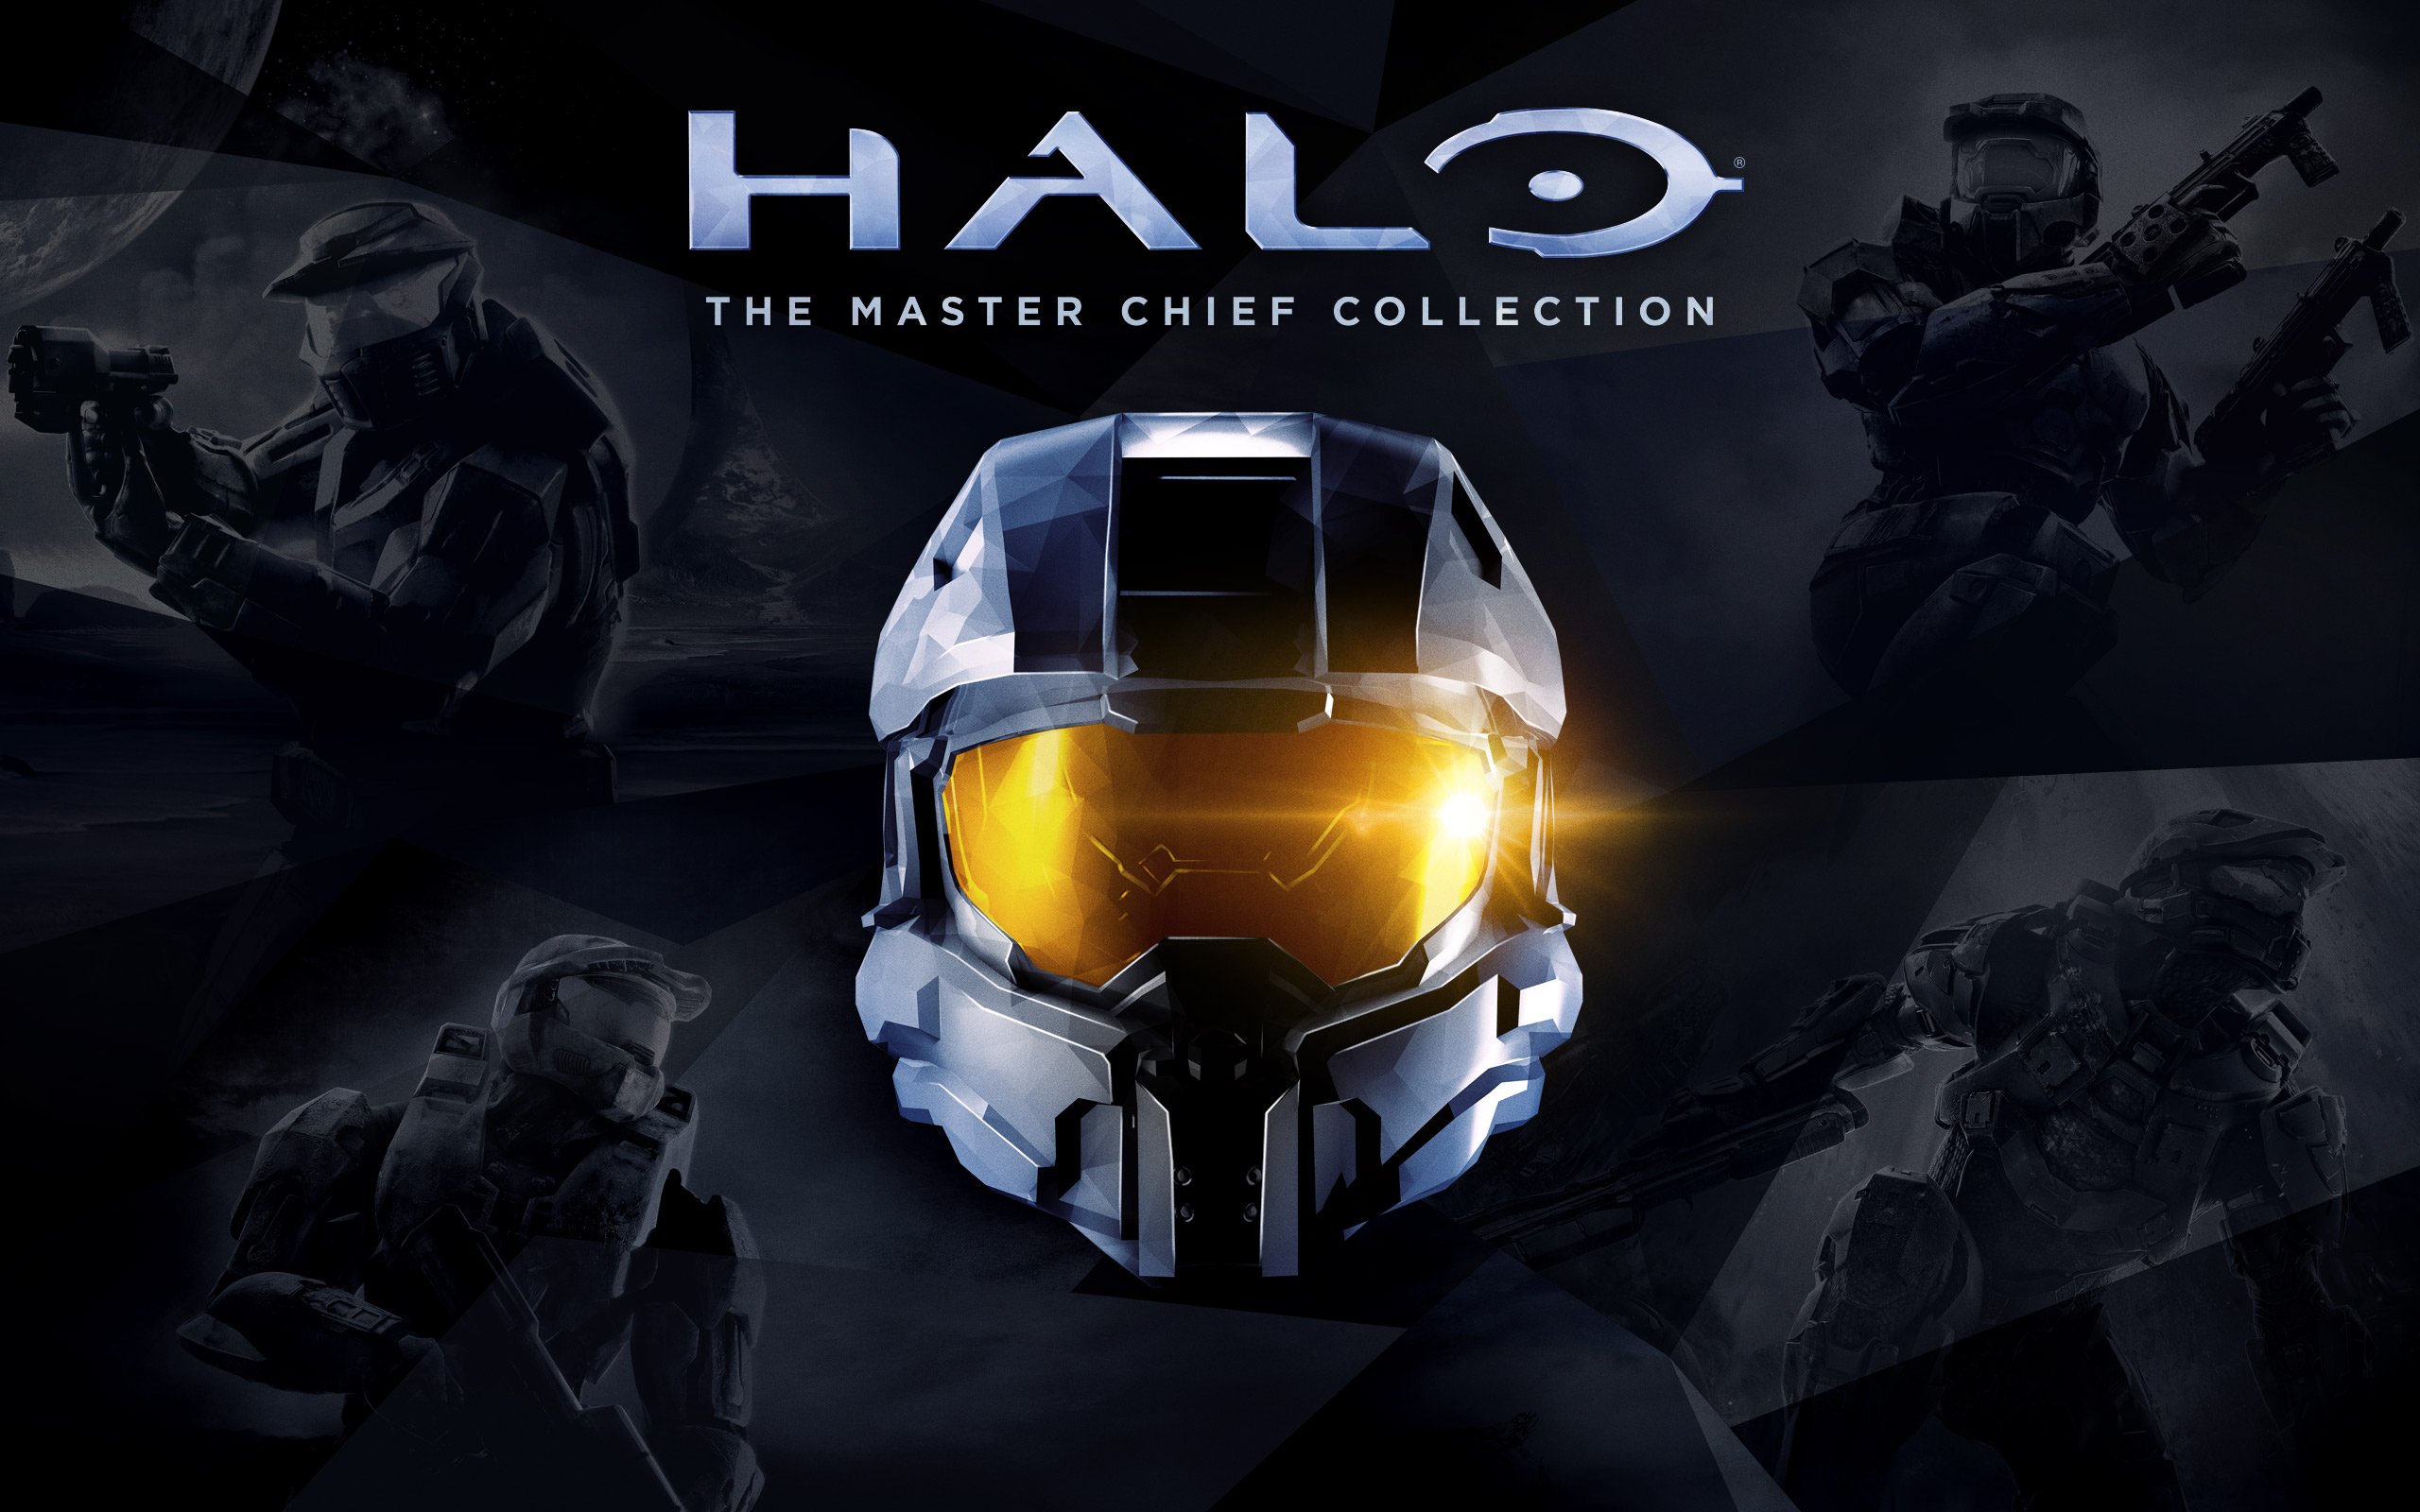 Halo 3 pour PC prêt à être testé dès le mois de juin